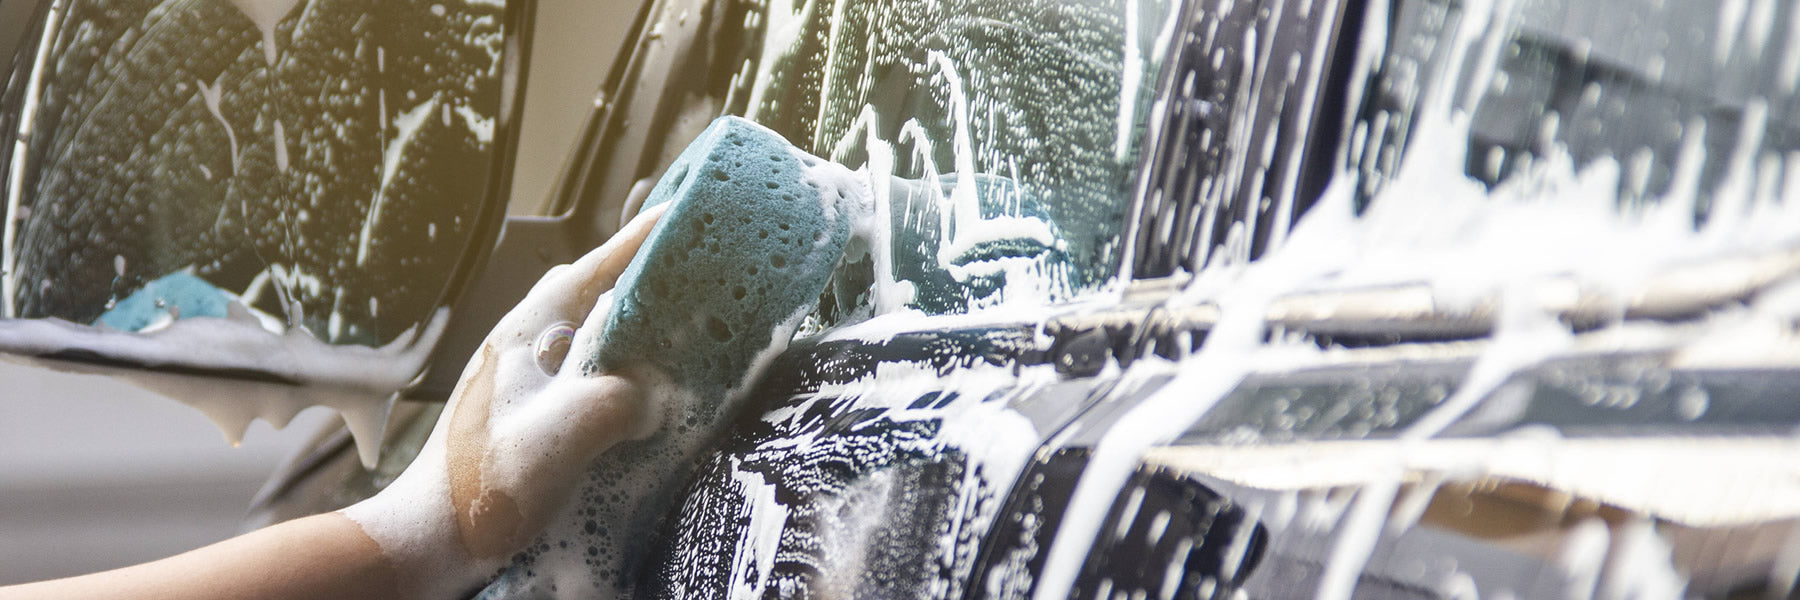 Properly washing your car before ceramic coating